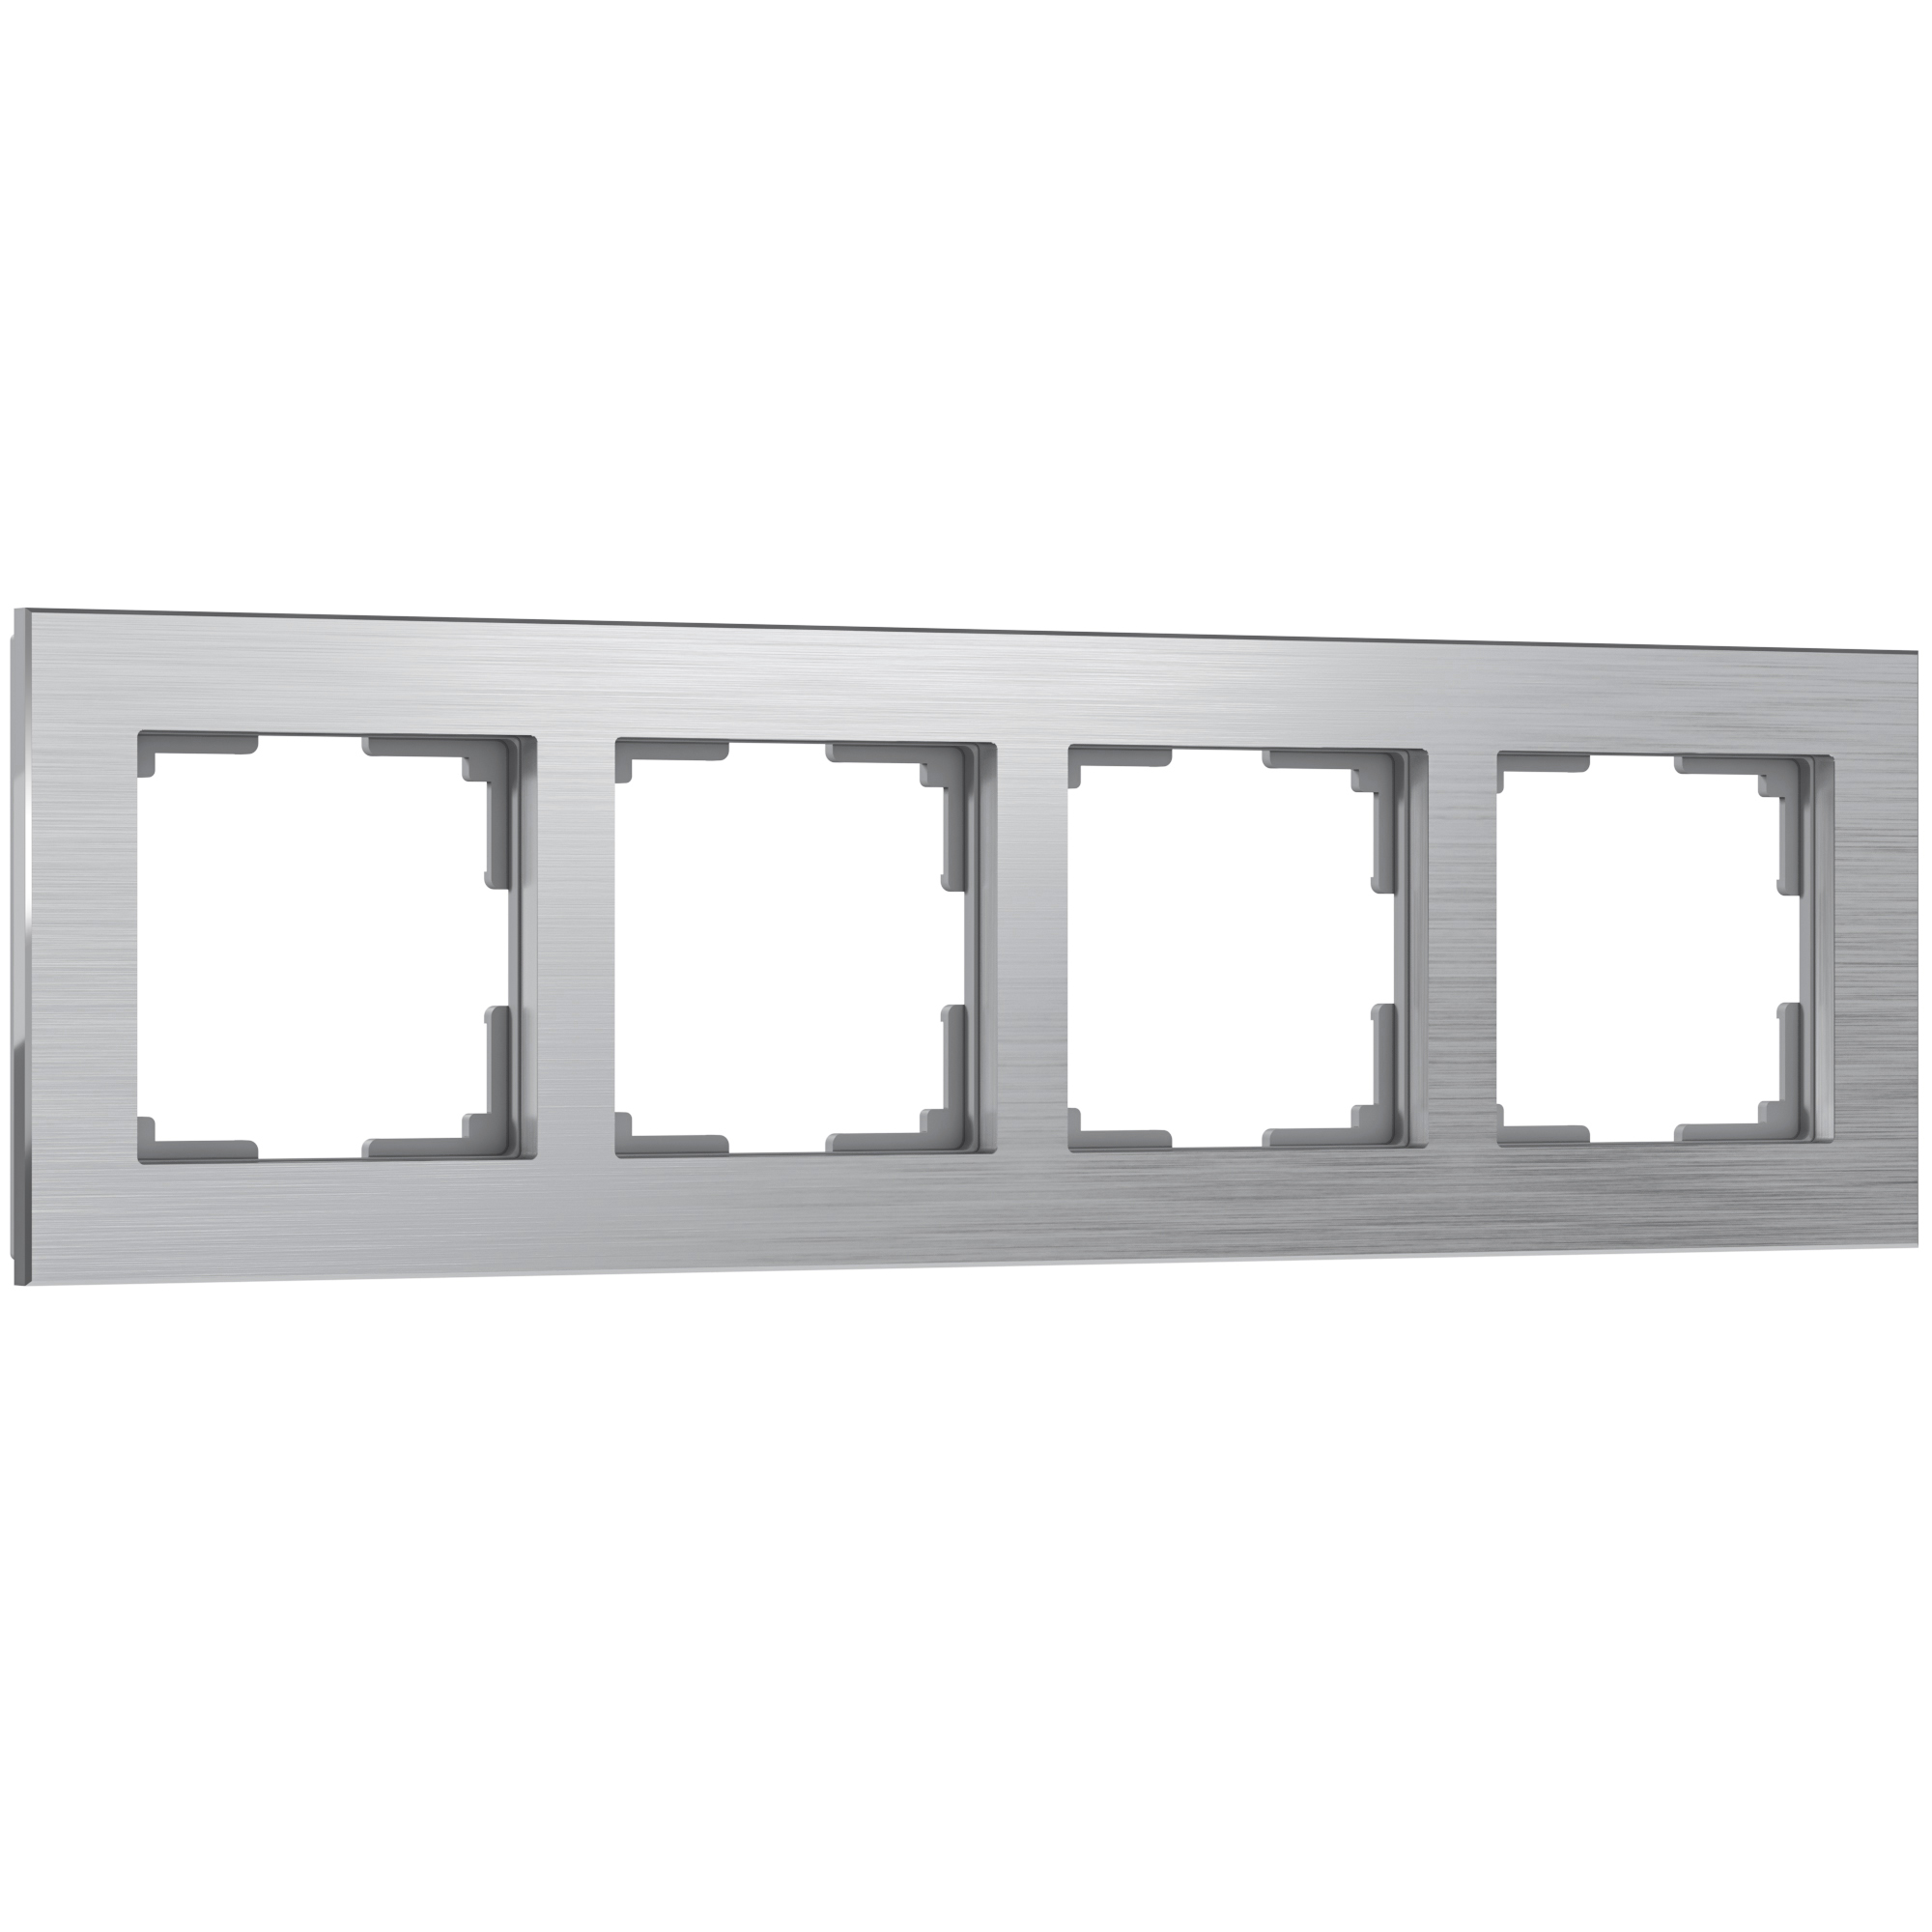 Рамка для розетки / выключателя на 4 поста Werkel W0041706 Aluminium алюминий рамка на 5 постов эра 12 5005 06 12 чёрный б0014786